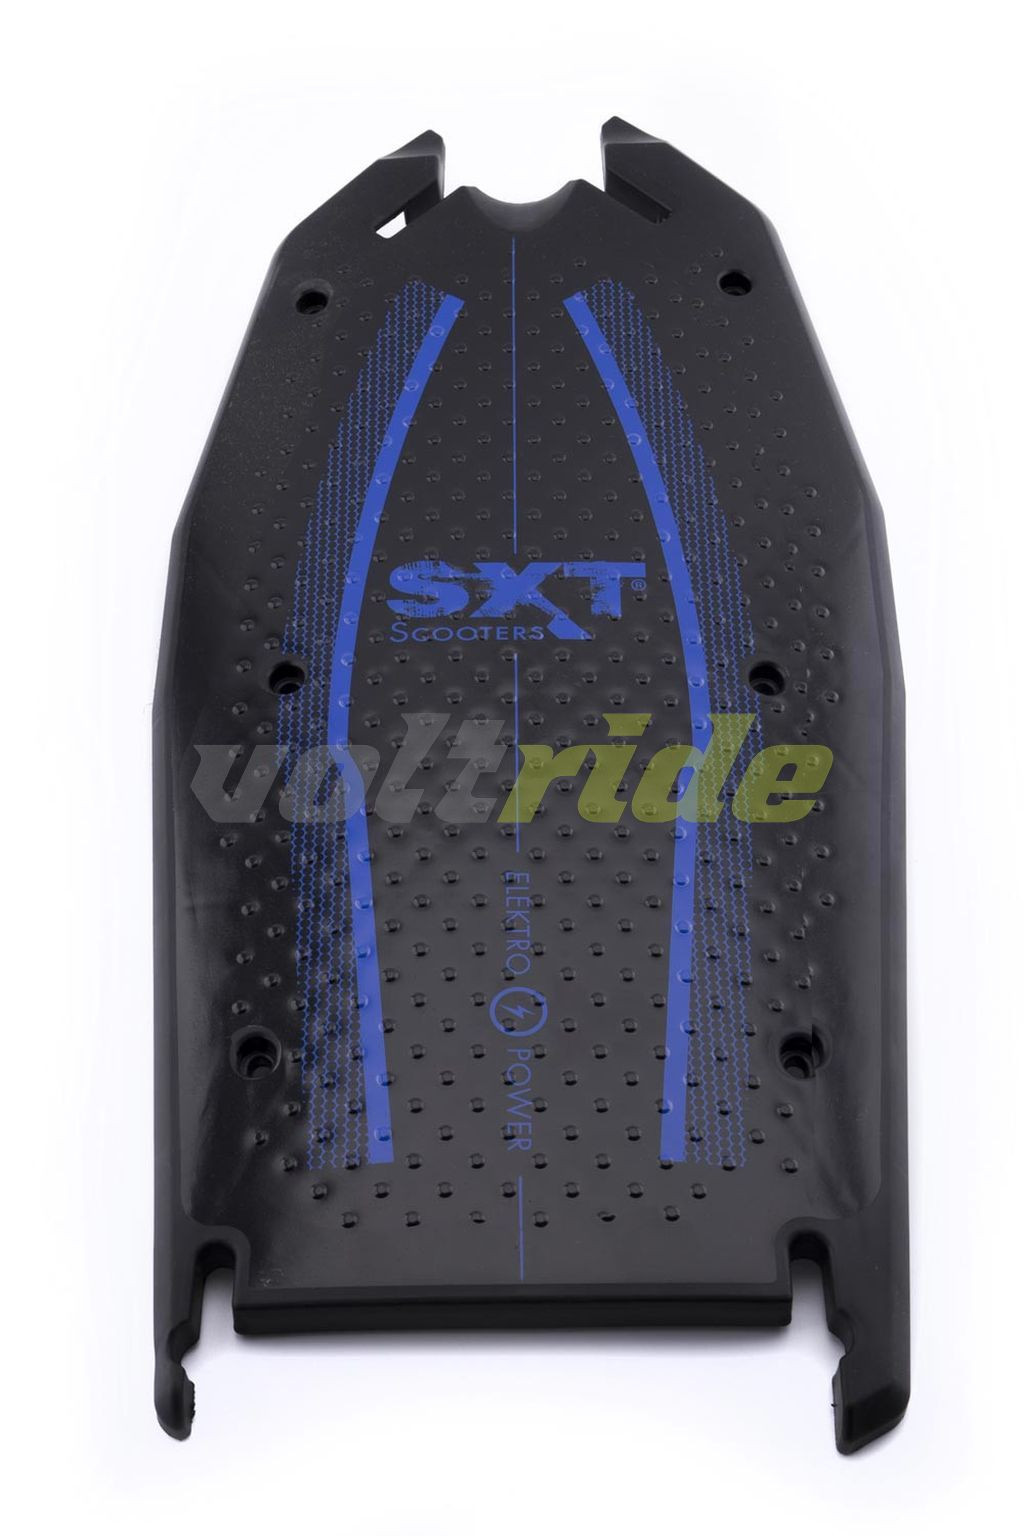 E-shop SXT Footplate plastic, Black-blue